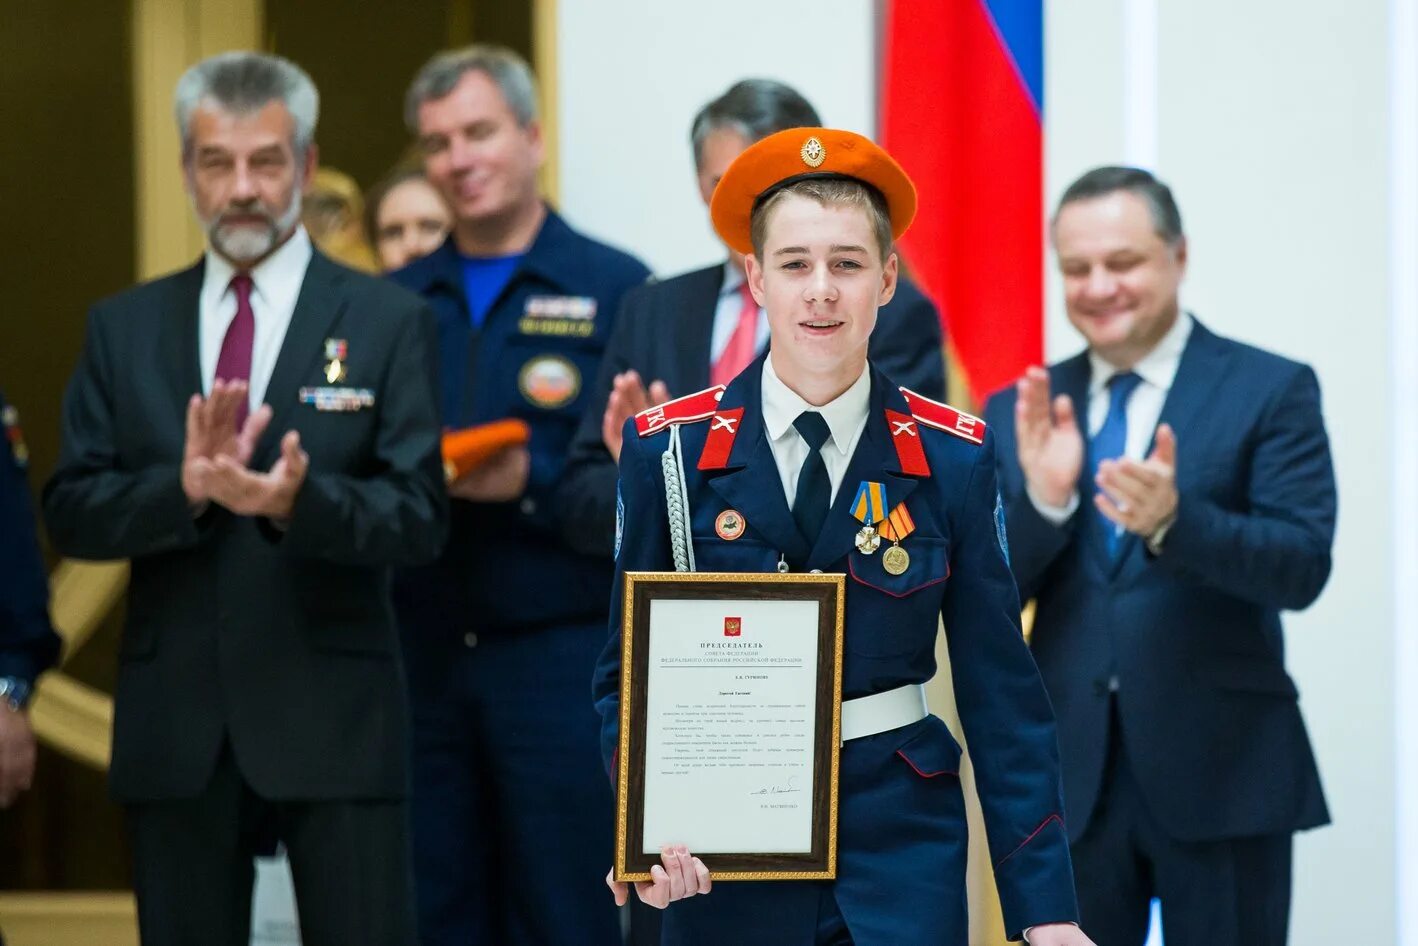 Награждение молодых. Награждение медалью. Награждение юных героев. Вручение медали герой России.